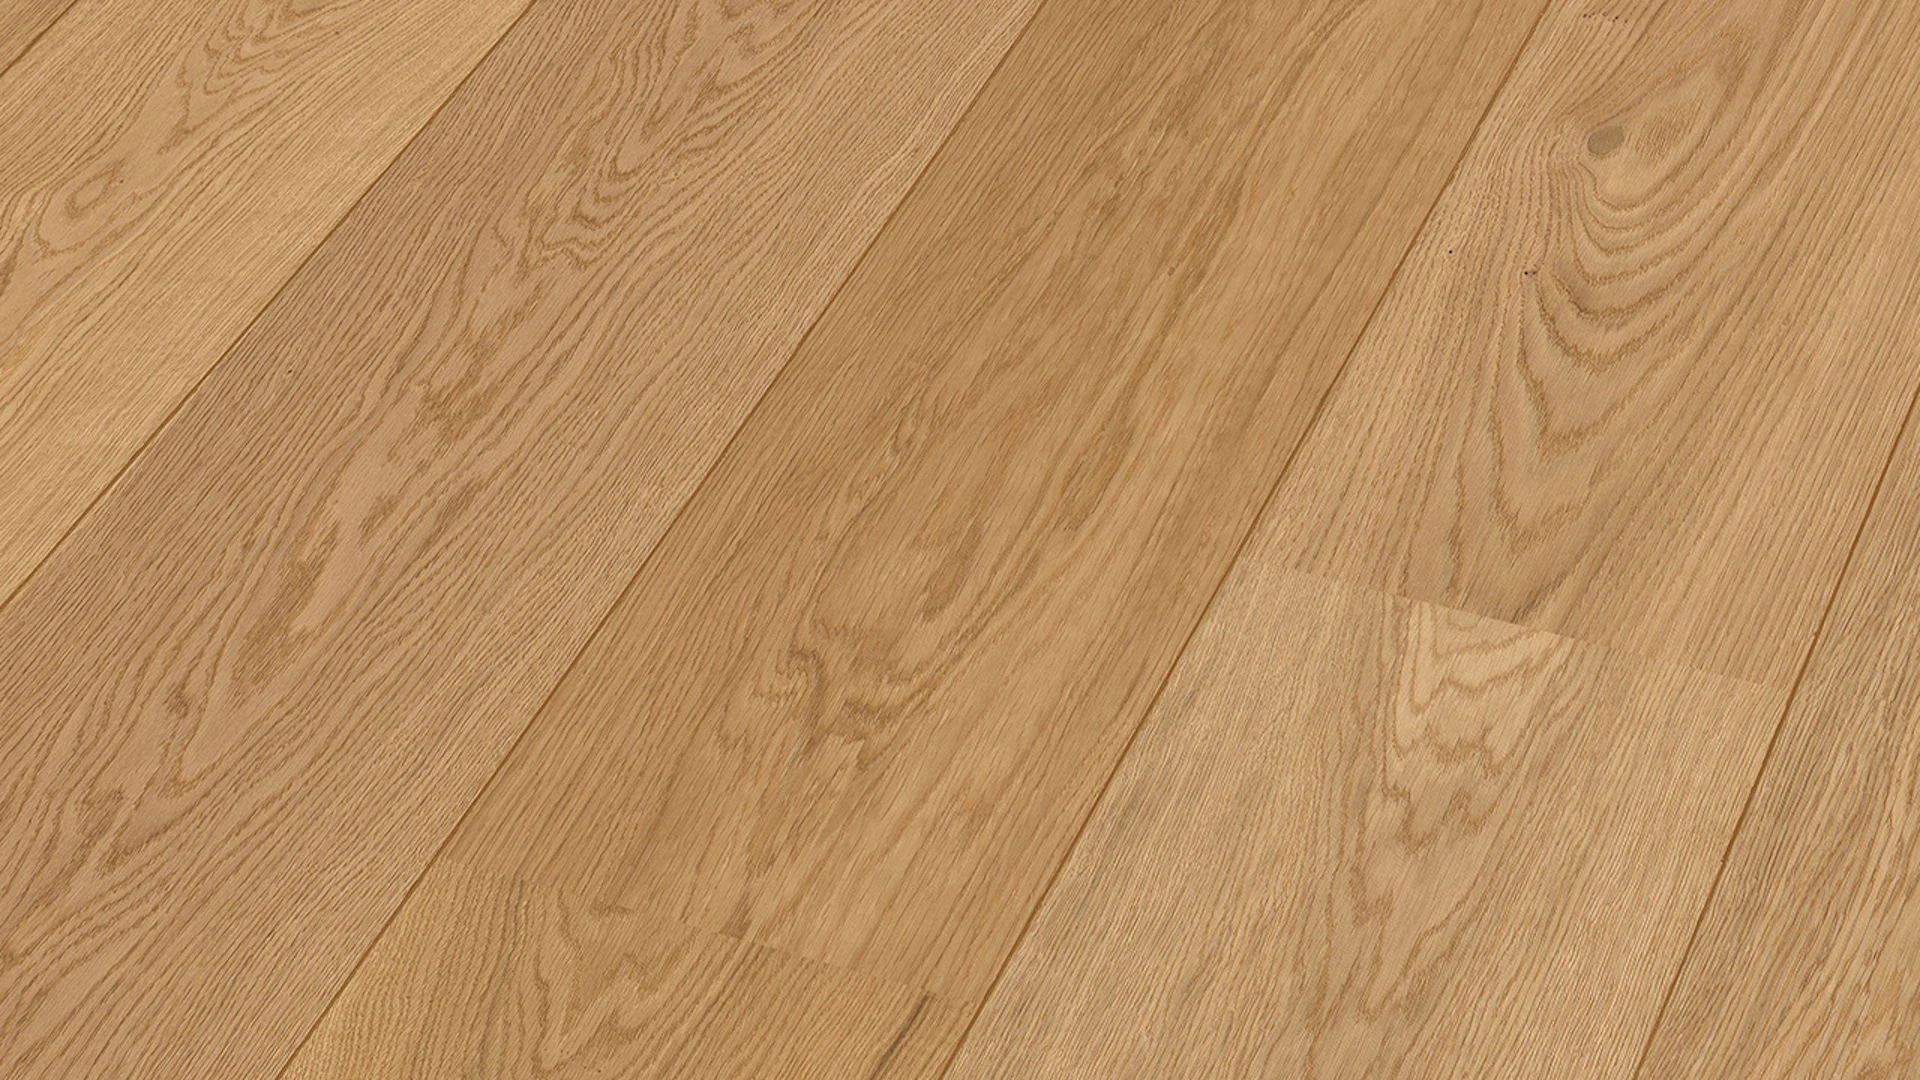 MEISTER Parquet Flooring - Lindura HD 400 Natural Oak (500012-2200270-08913)